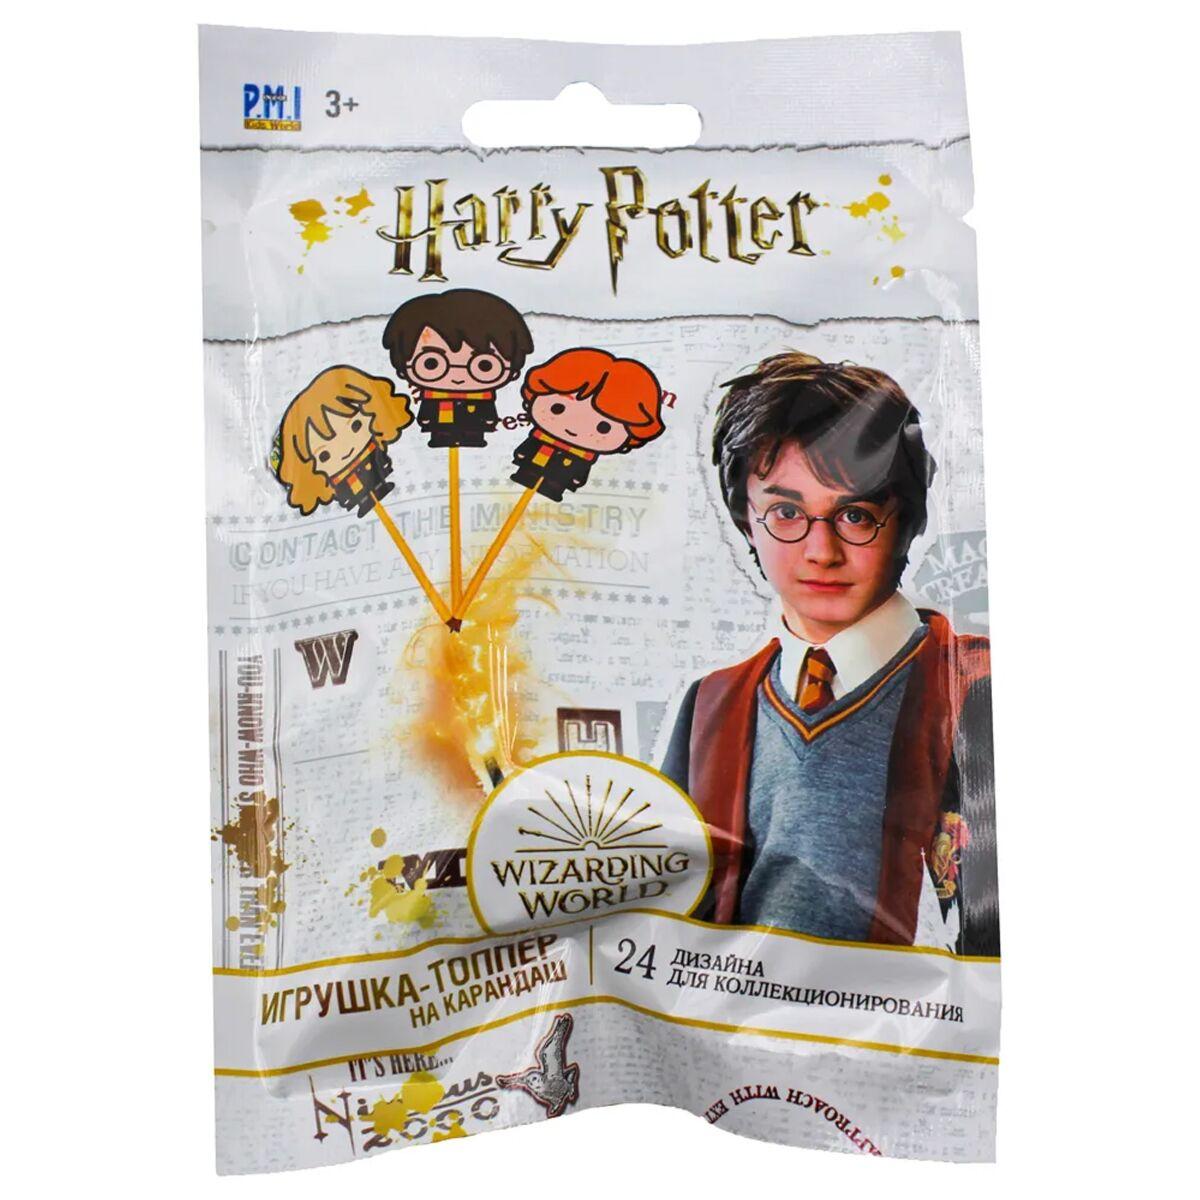 Harry Potter: Игрушка-топпер 5 см, фото 1